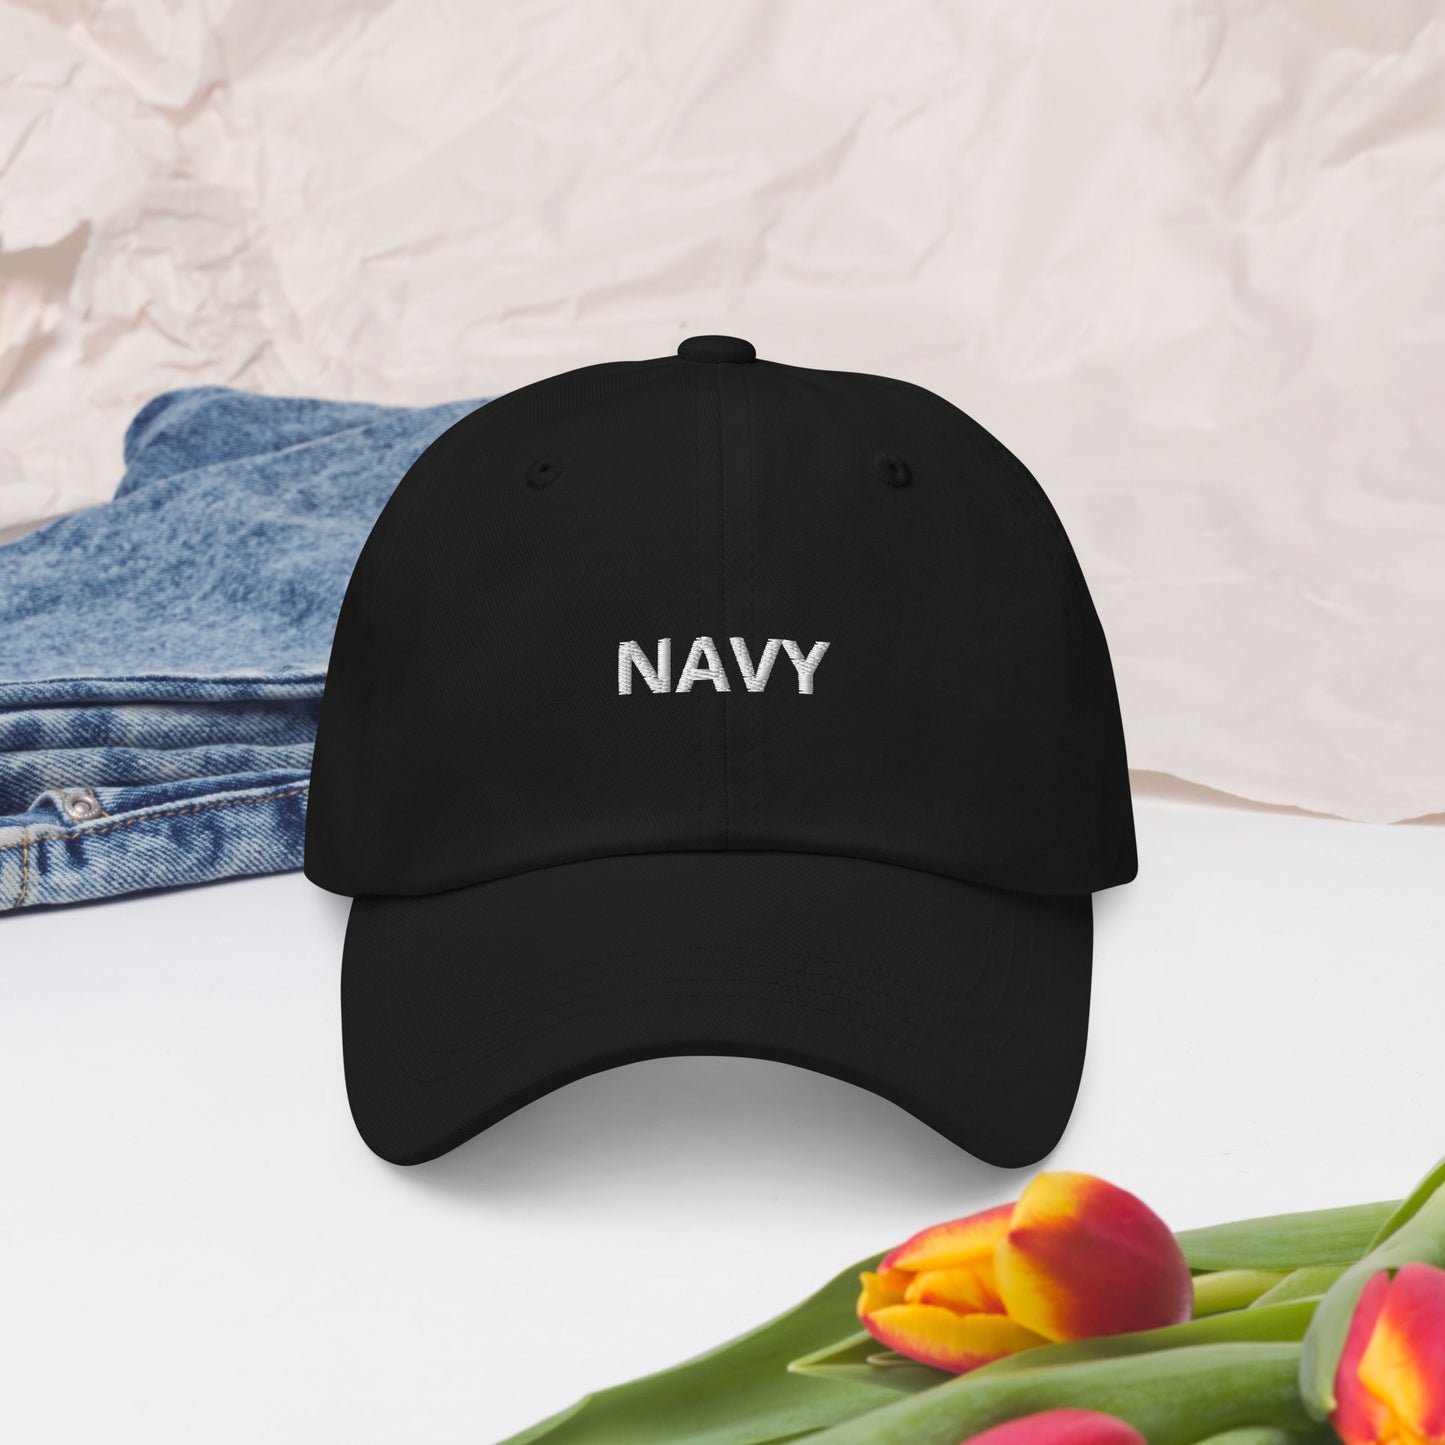 NAVY  hat